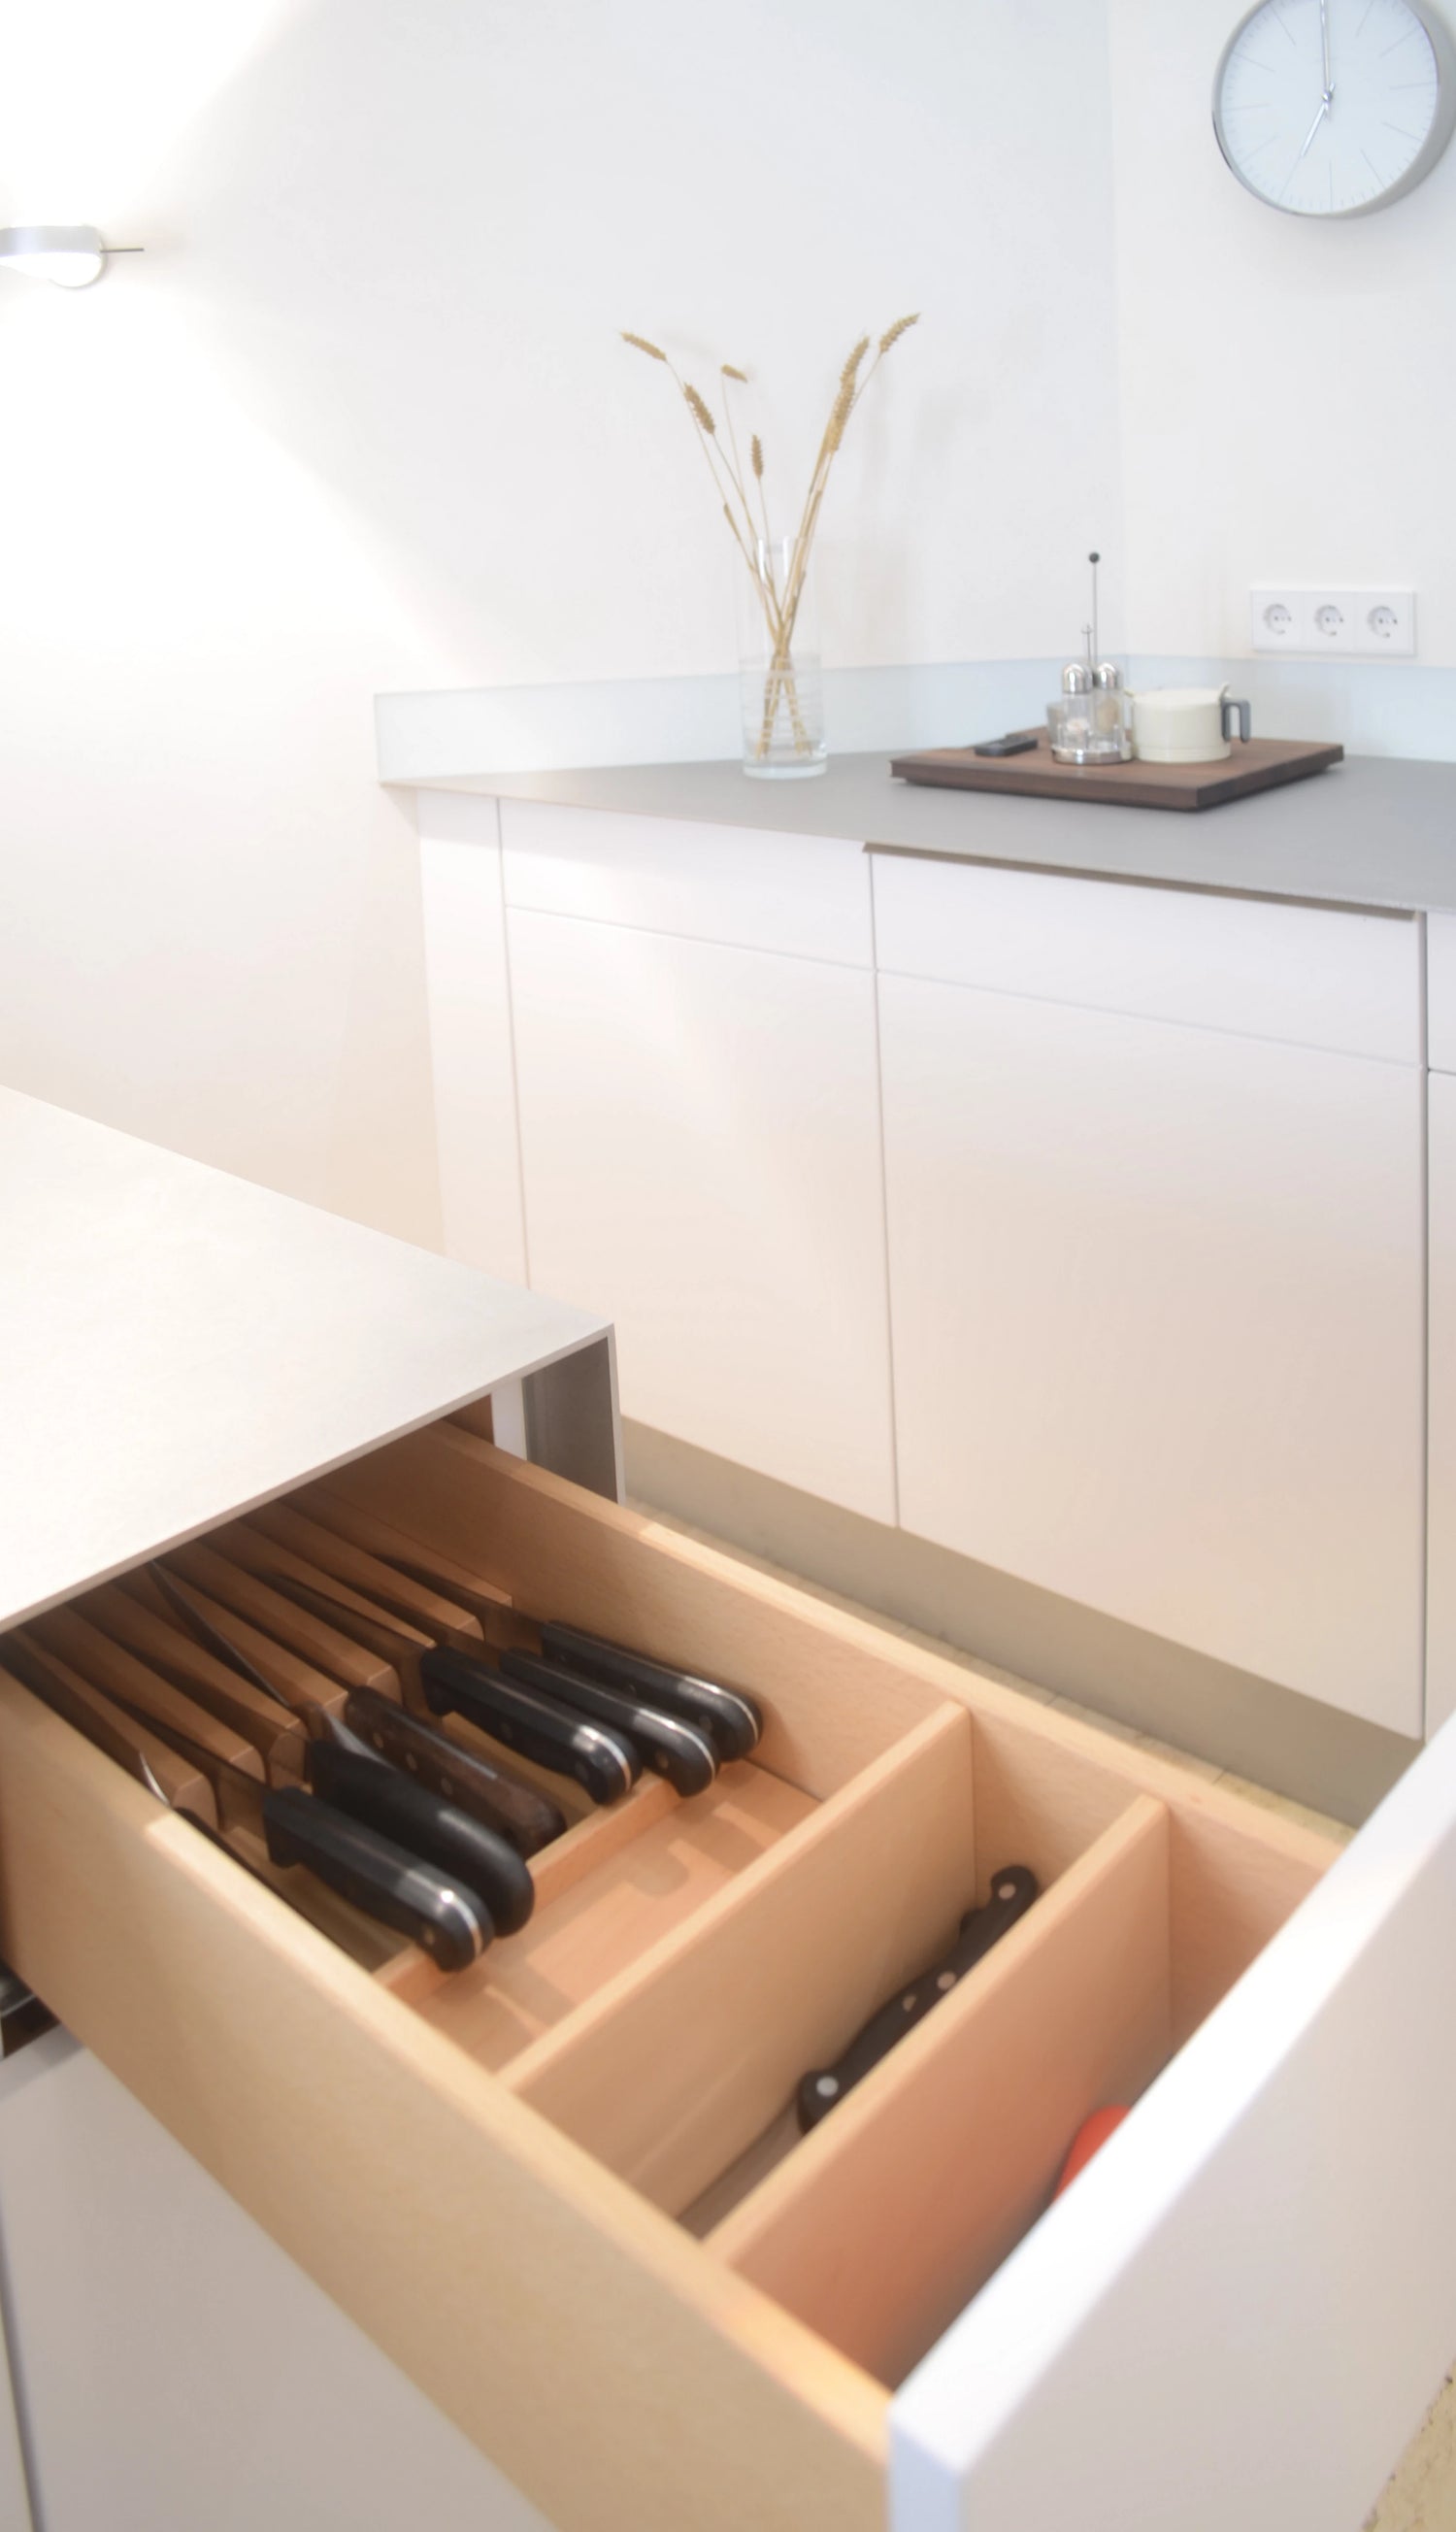 Maßgefertigte Details: Schublade aus Massivholz für Messer in kleiner weißer Küche